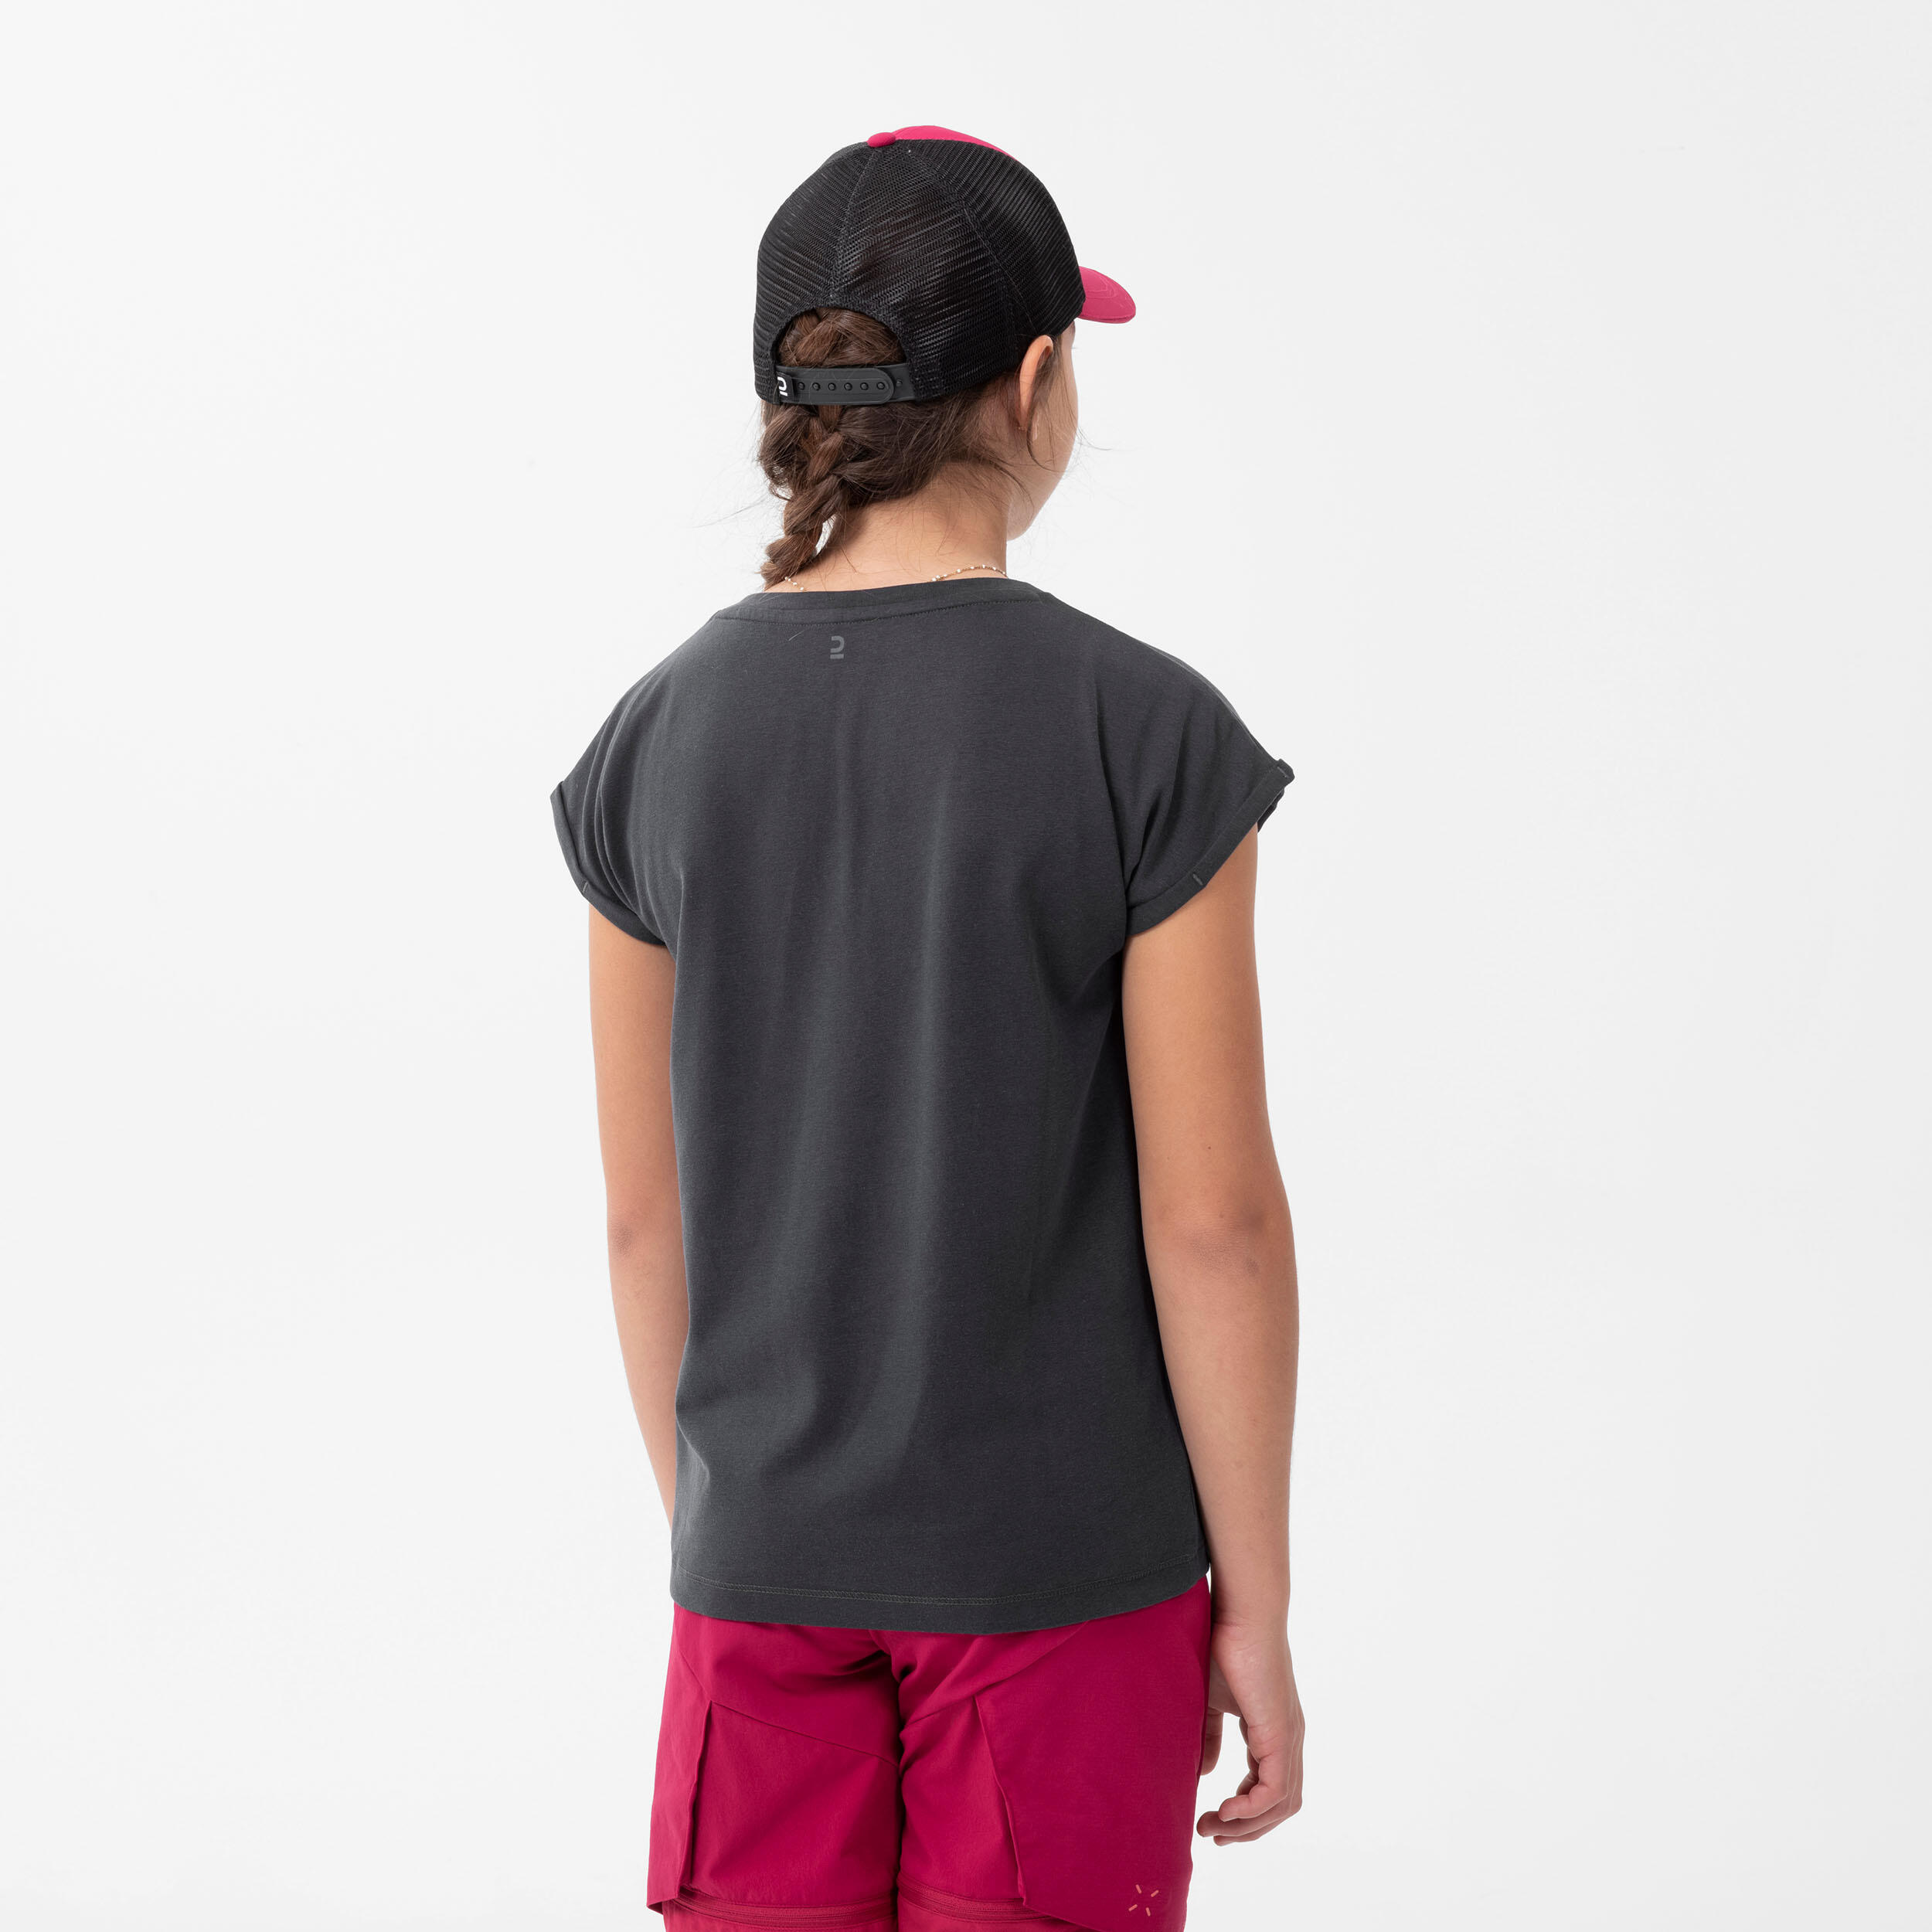 Hiking T-shirt - MH100 DARK GREY - Kids' 7-15 years 4/6